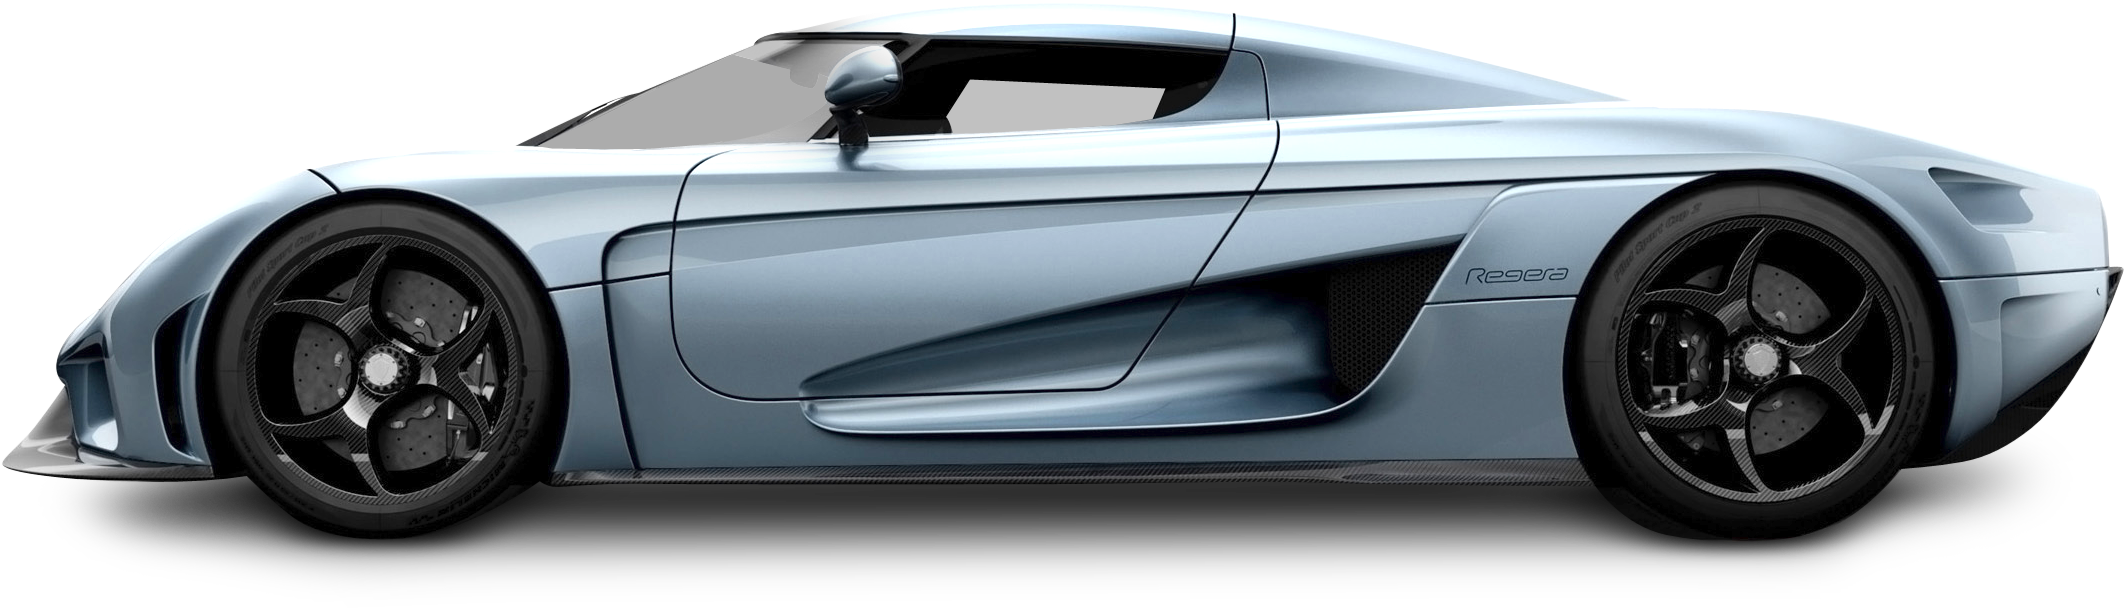 Immagine di PNG auto Koenigsegg